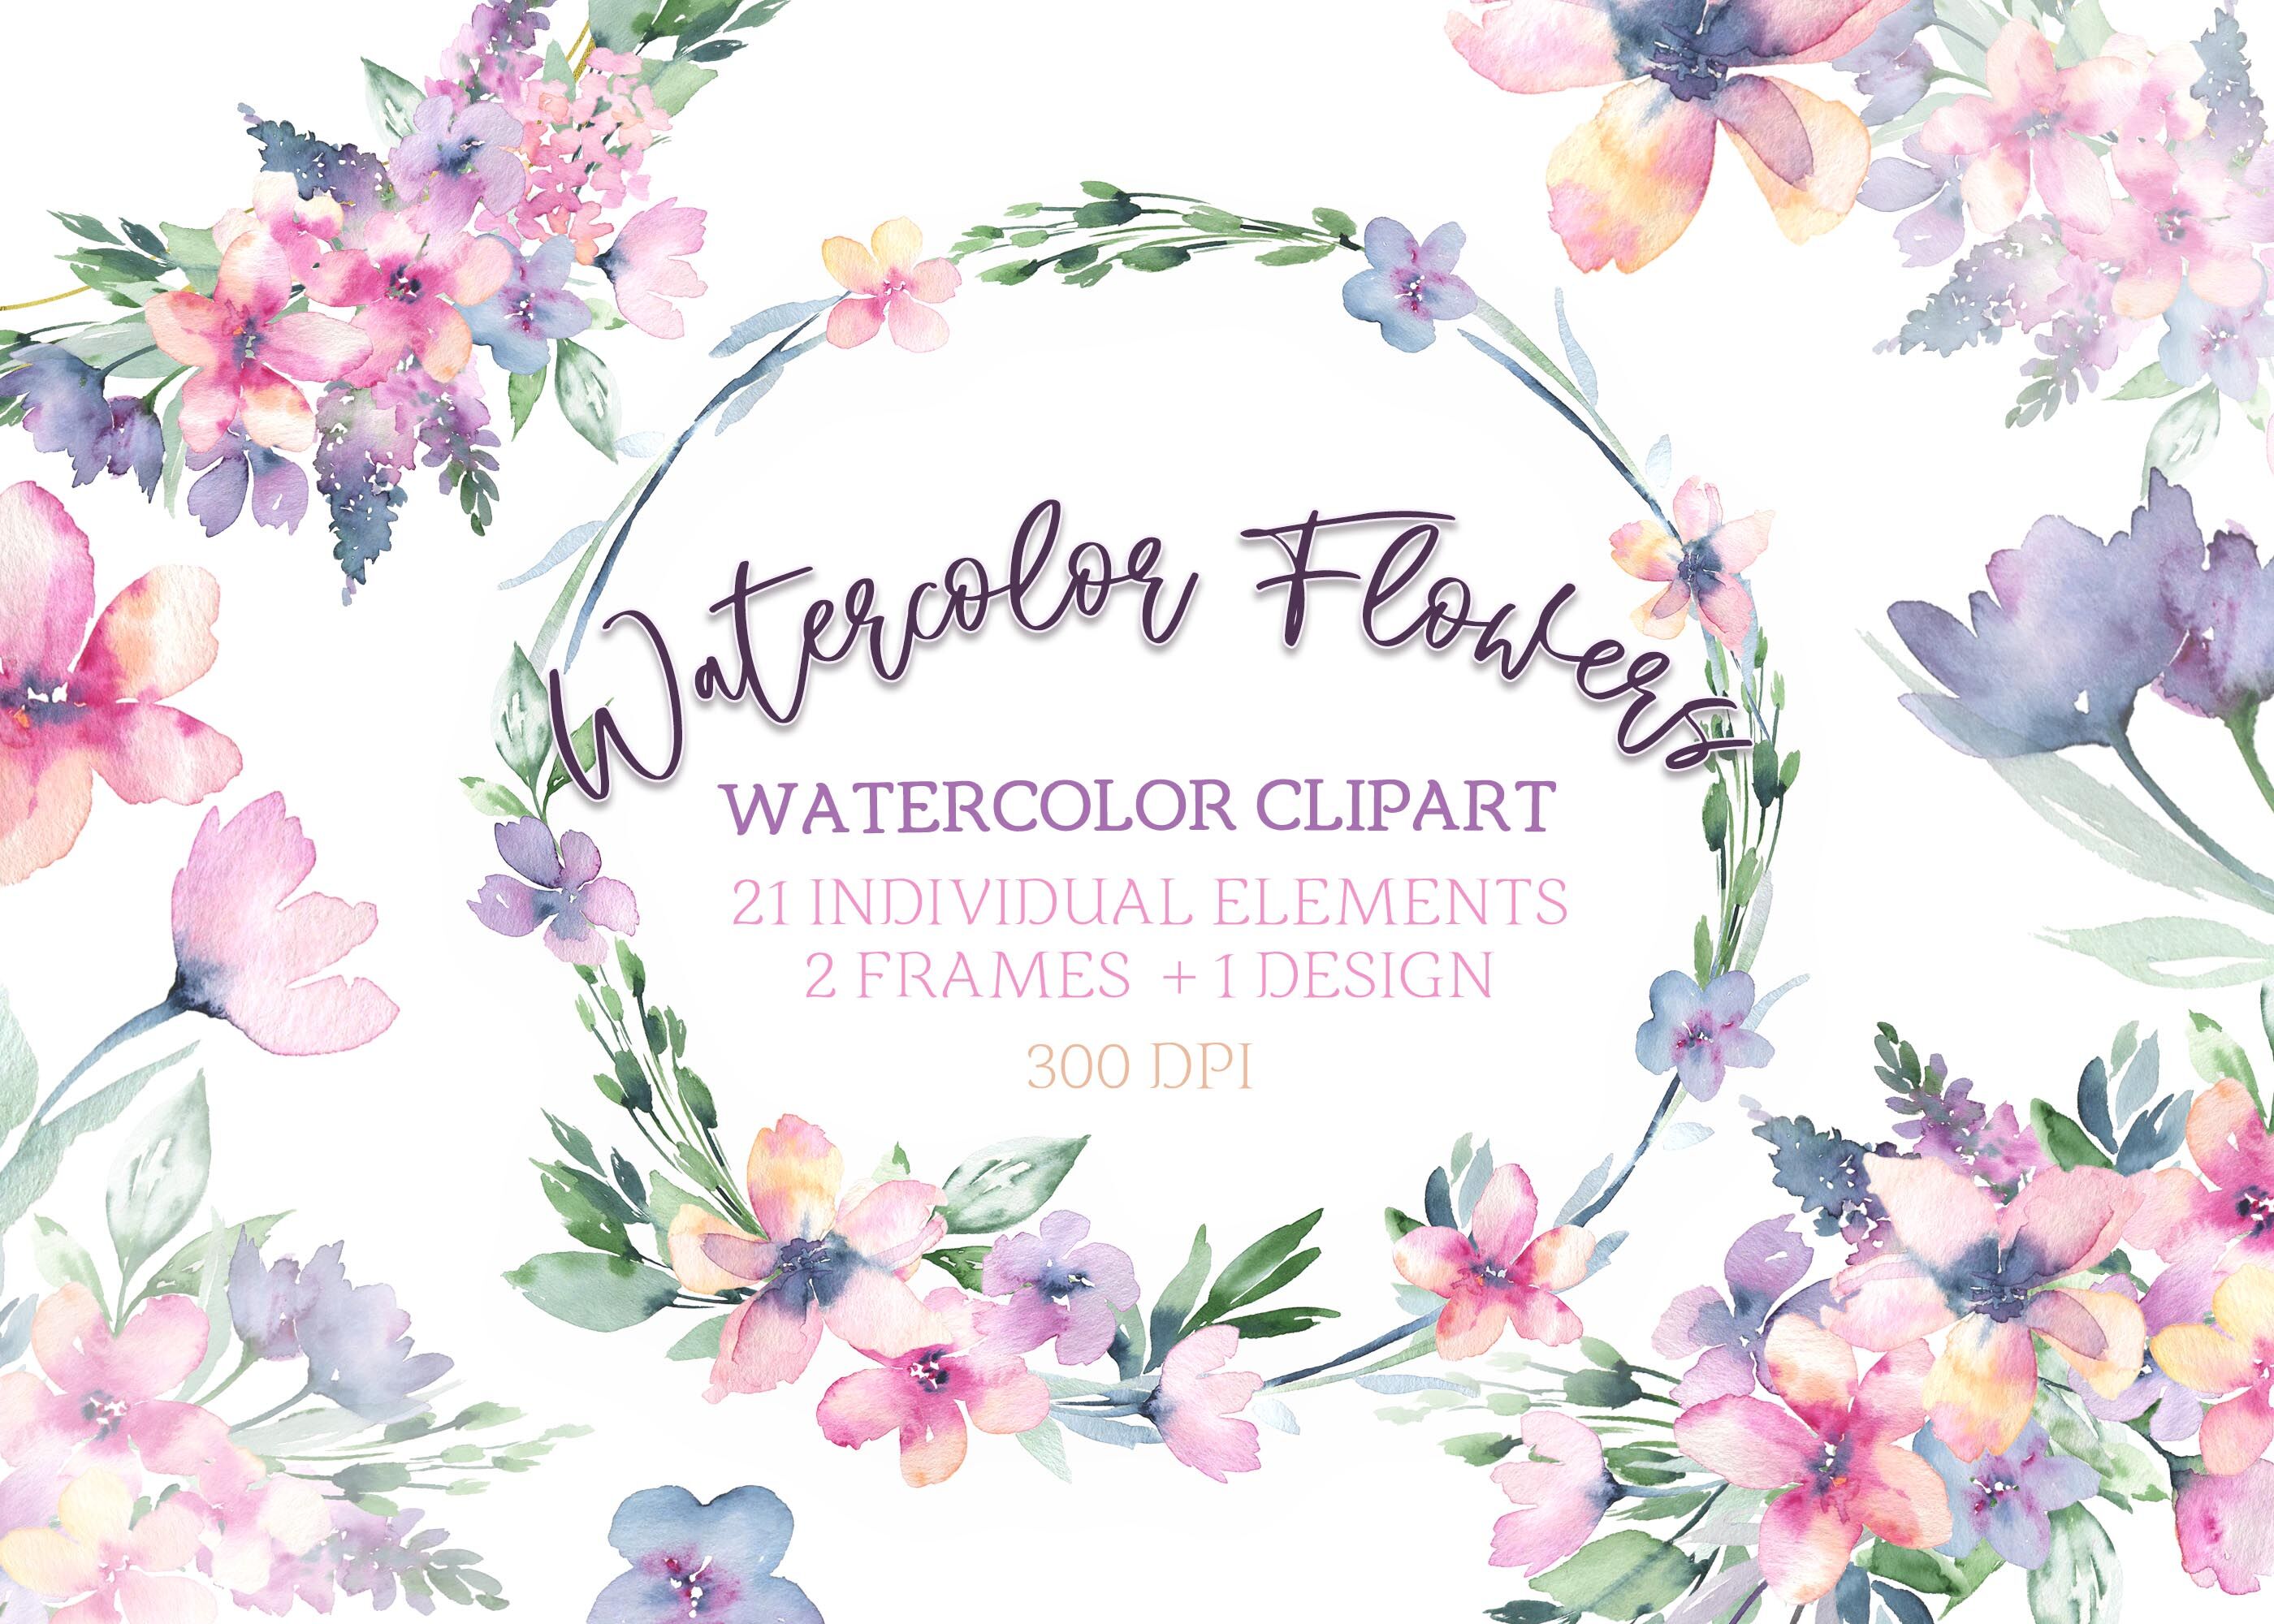 frame flower clipart